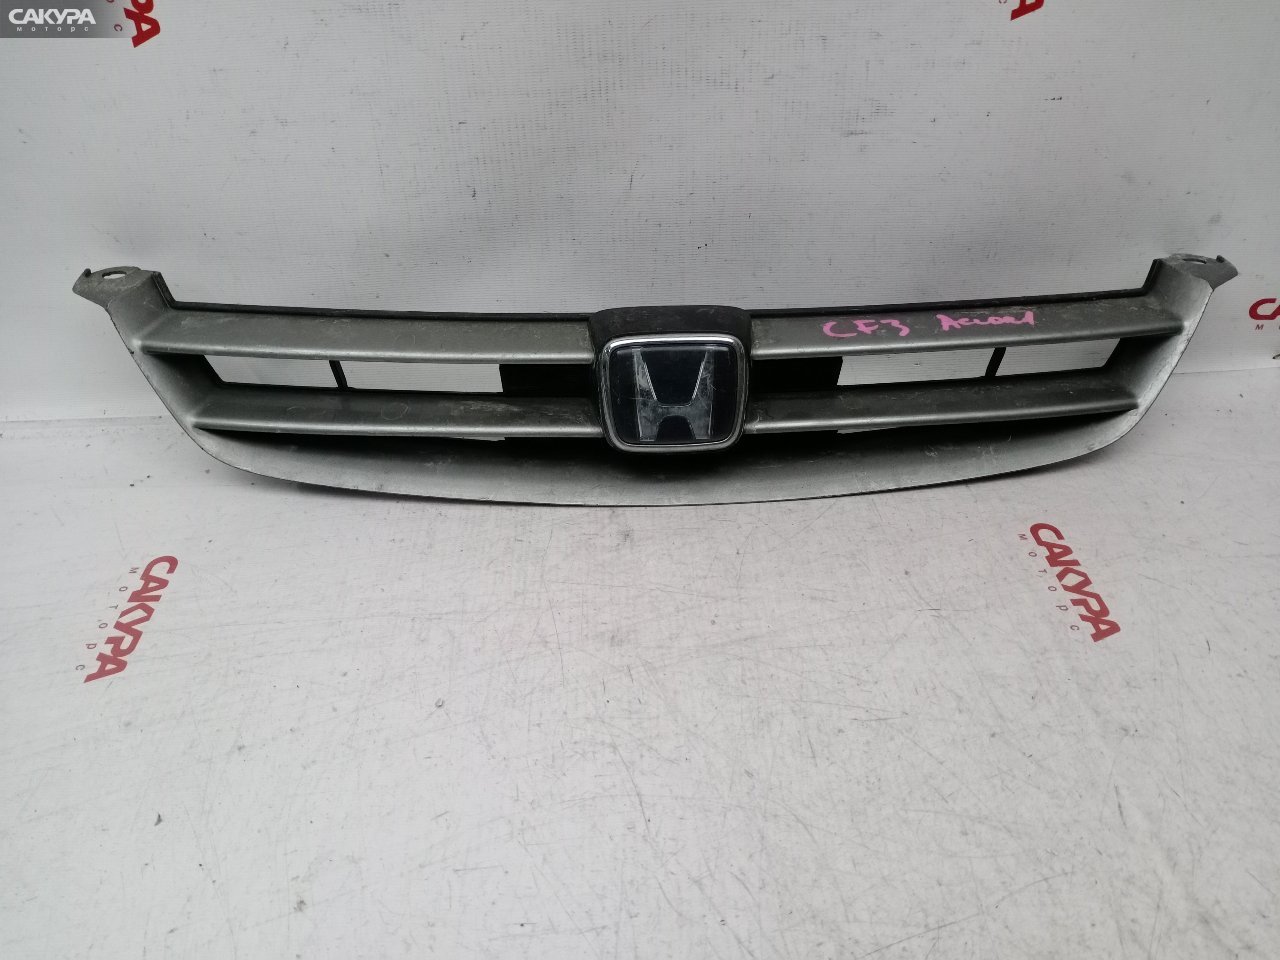 Решетка радиатора Honda Accord CF3: купить в Сакура Красноярск.